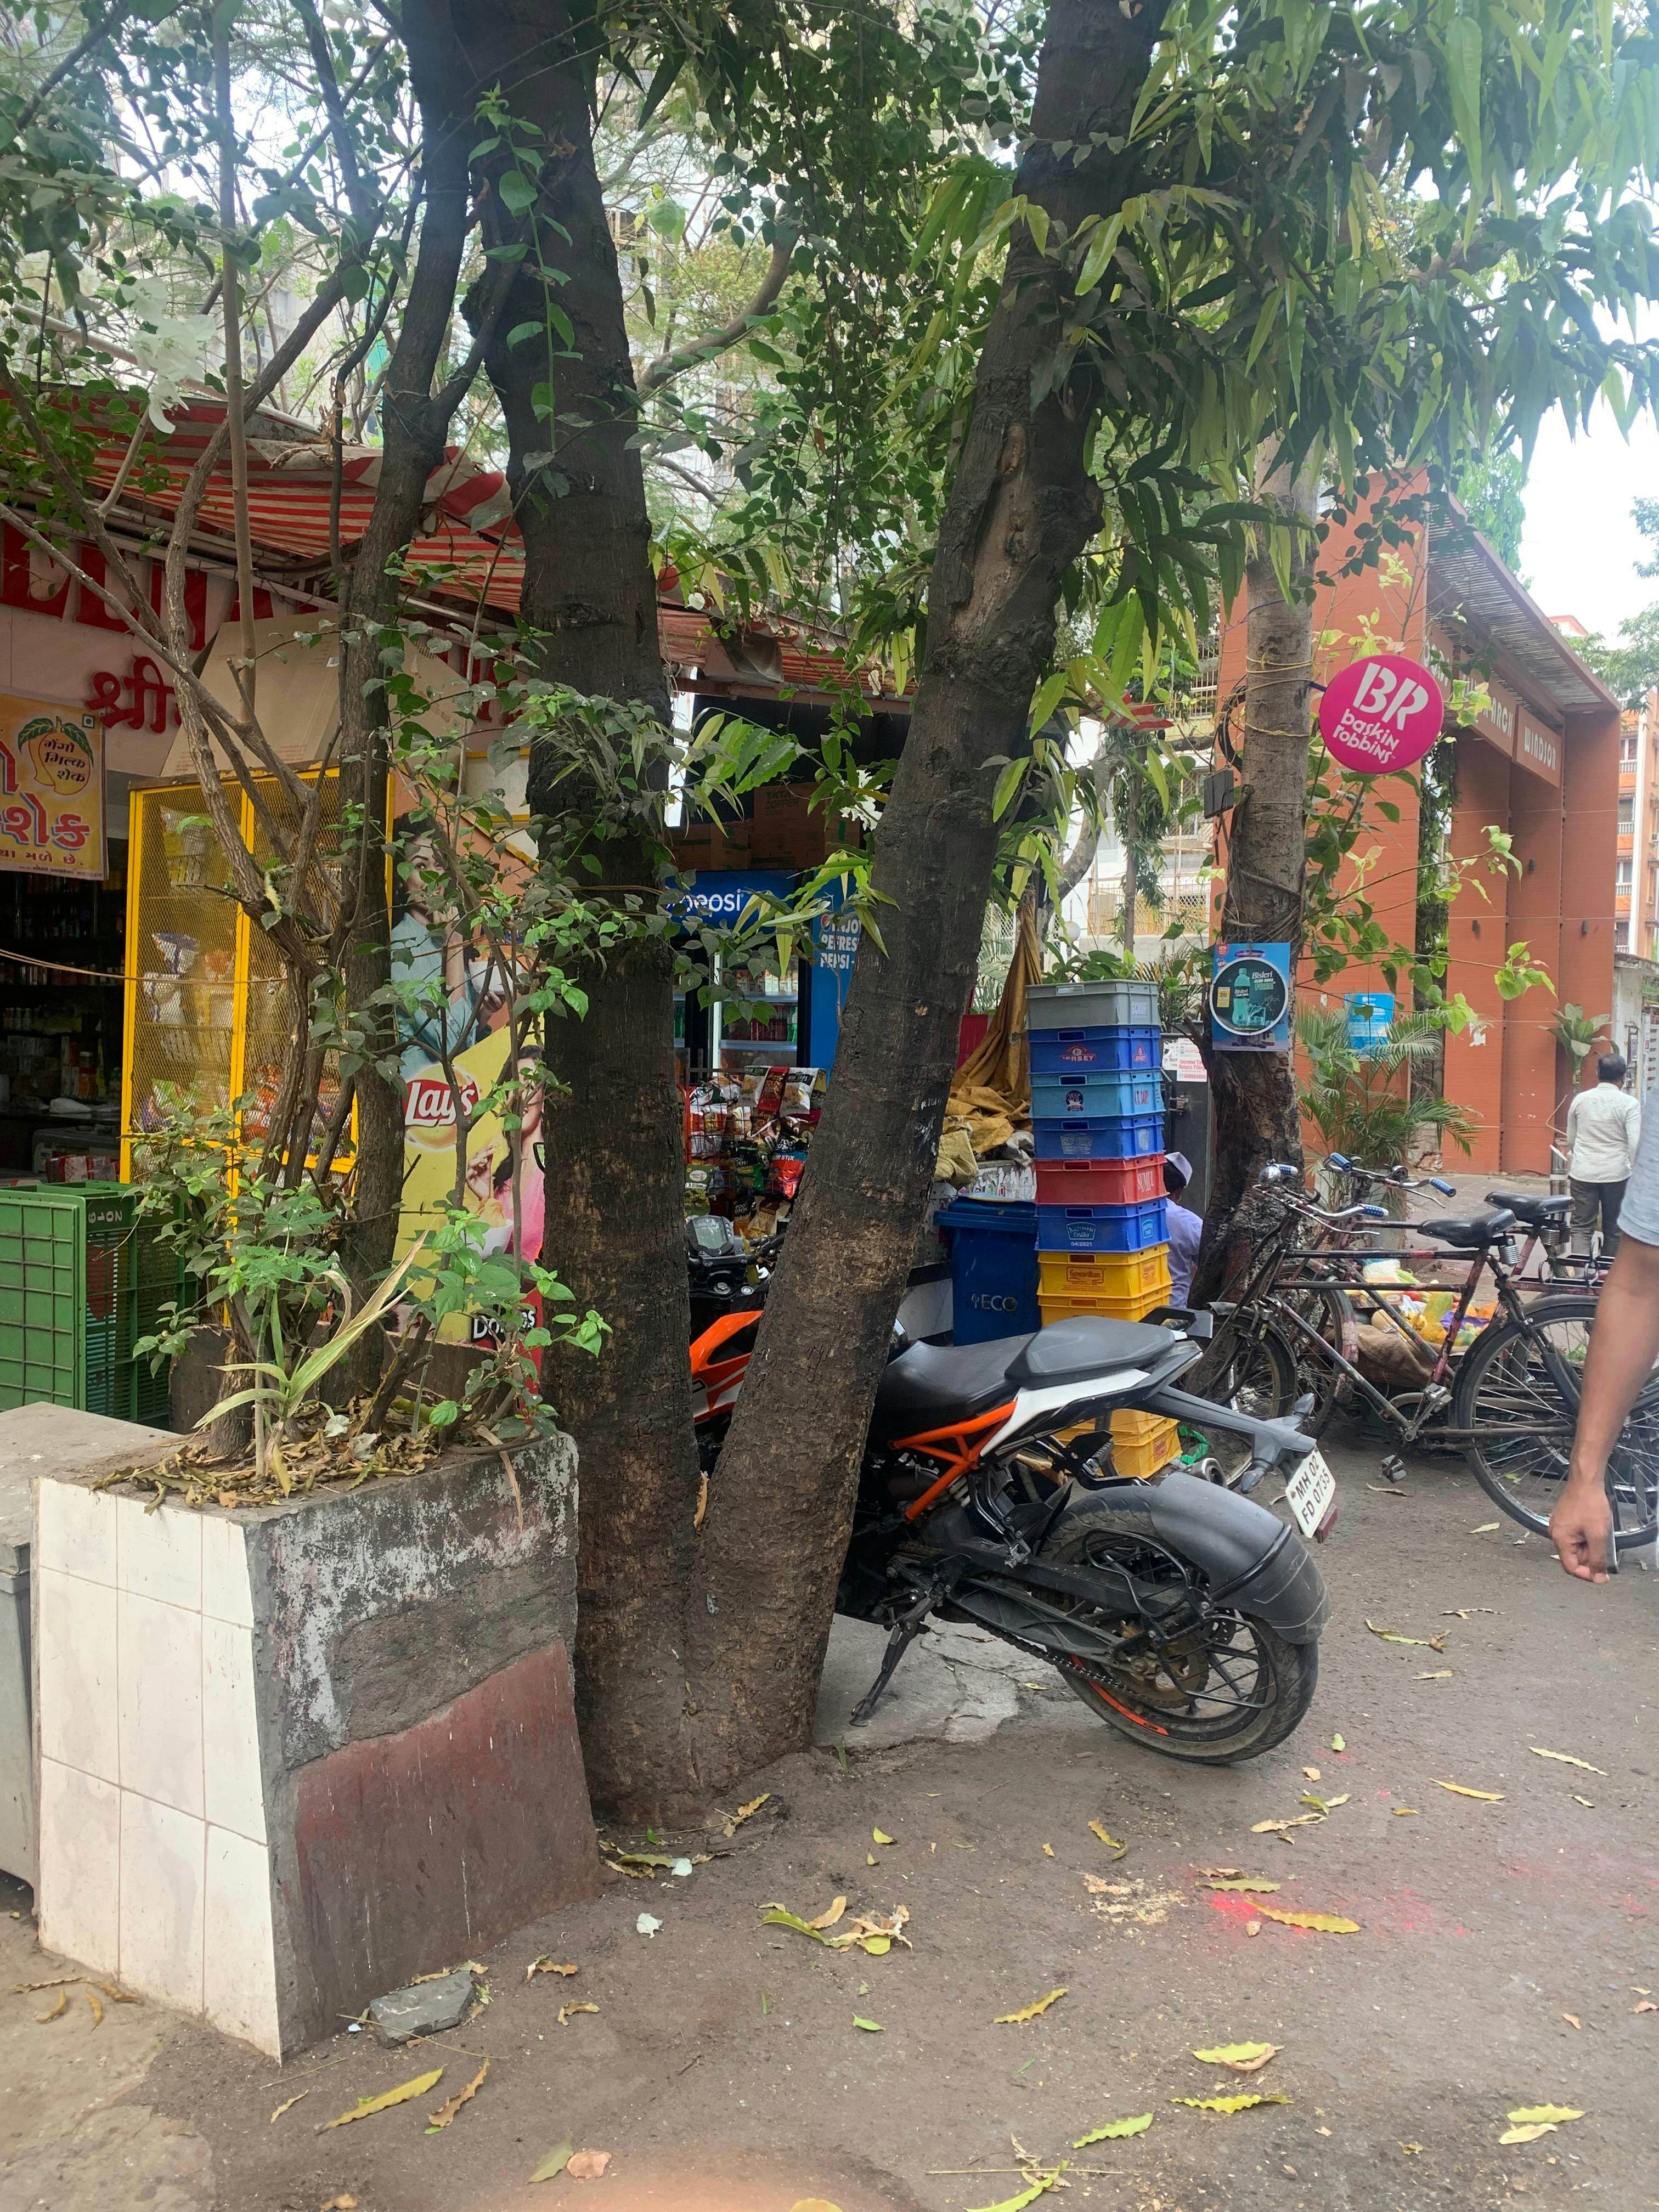 Kirana store in India